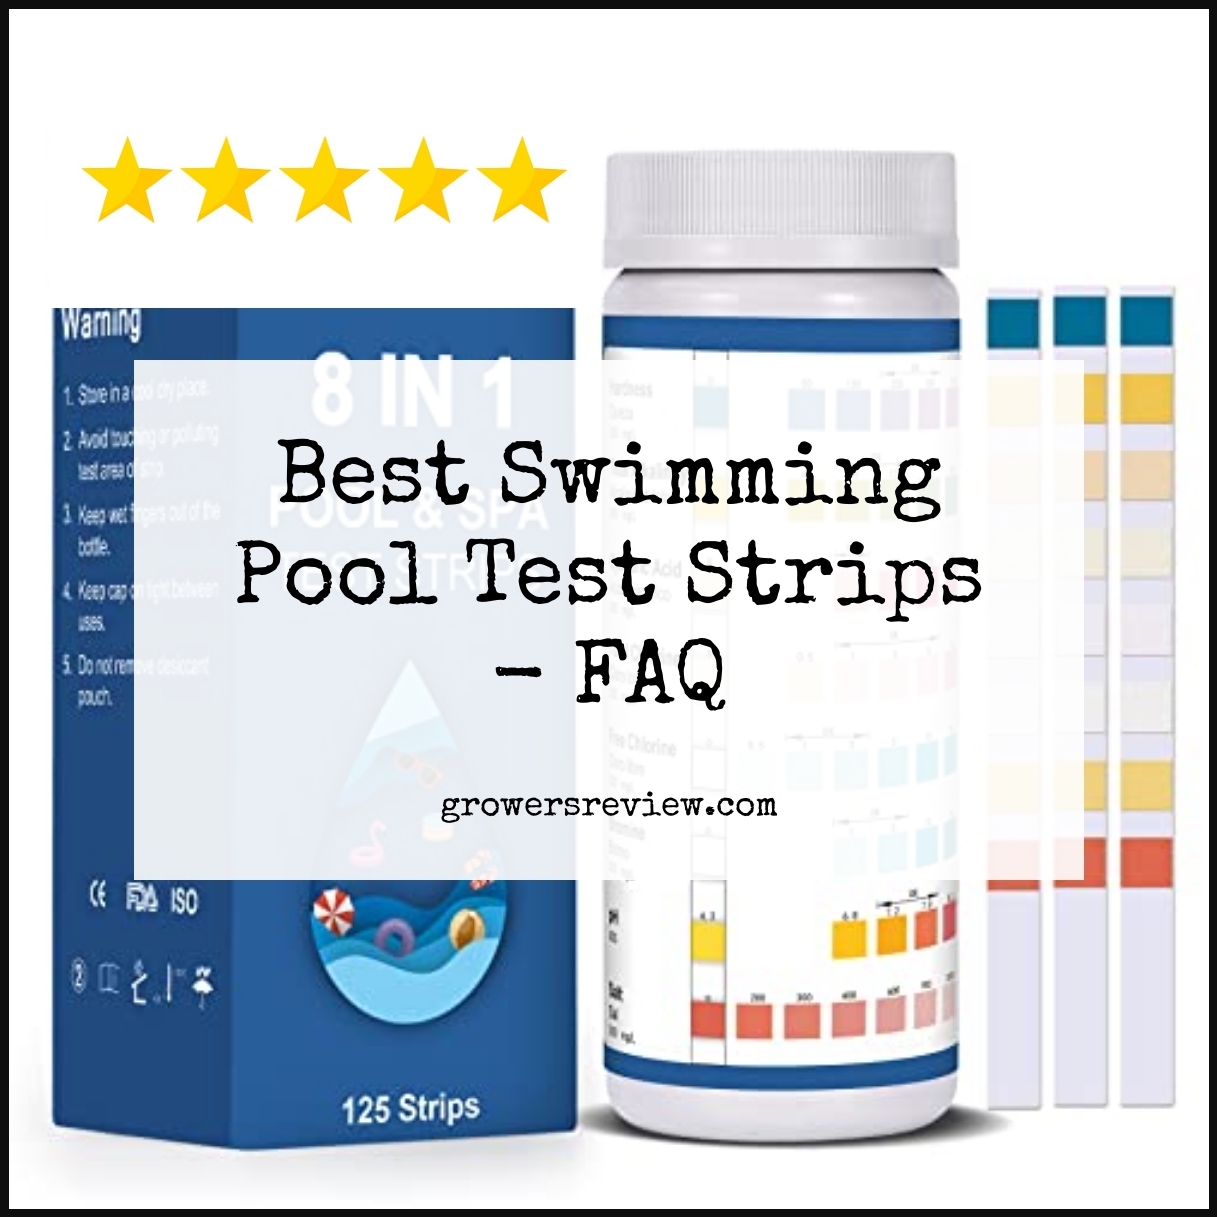 Best Swimming Pool Test Strips - FAQ